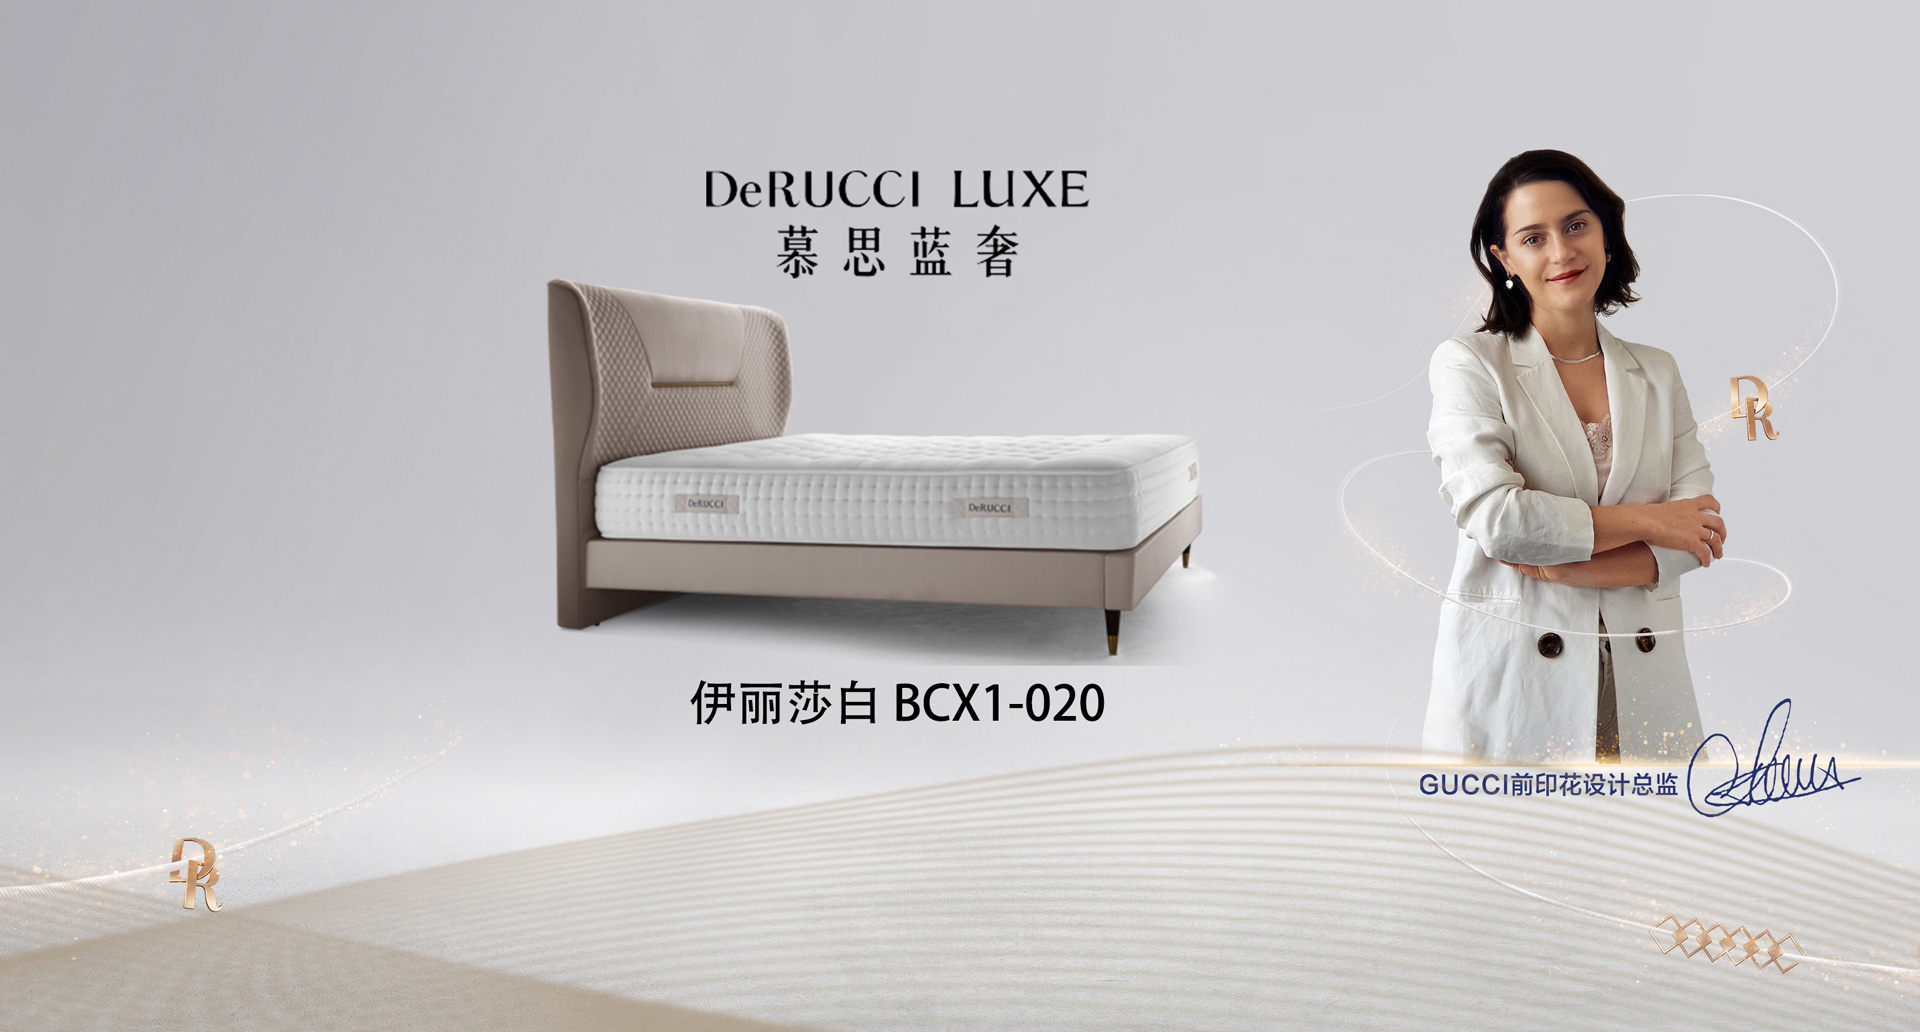 derucci furniture mattress 慕思家具 床垫 按摩椅